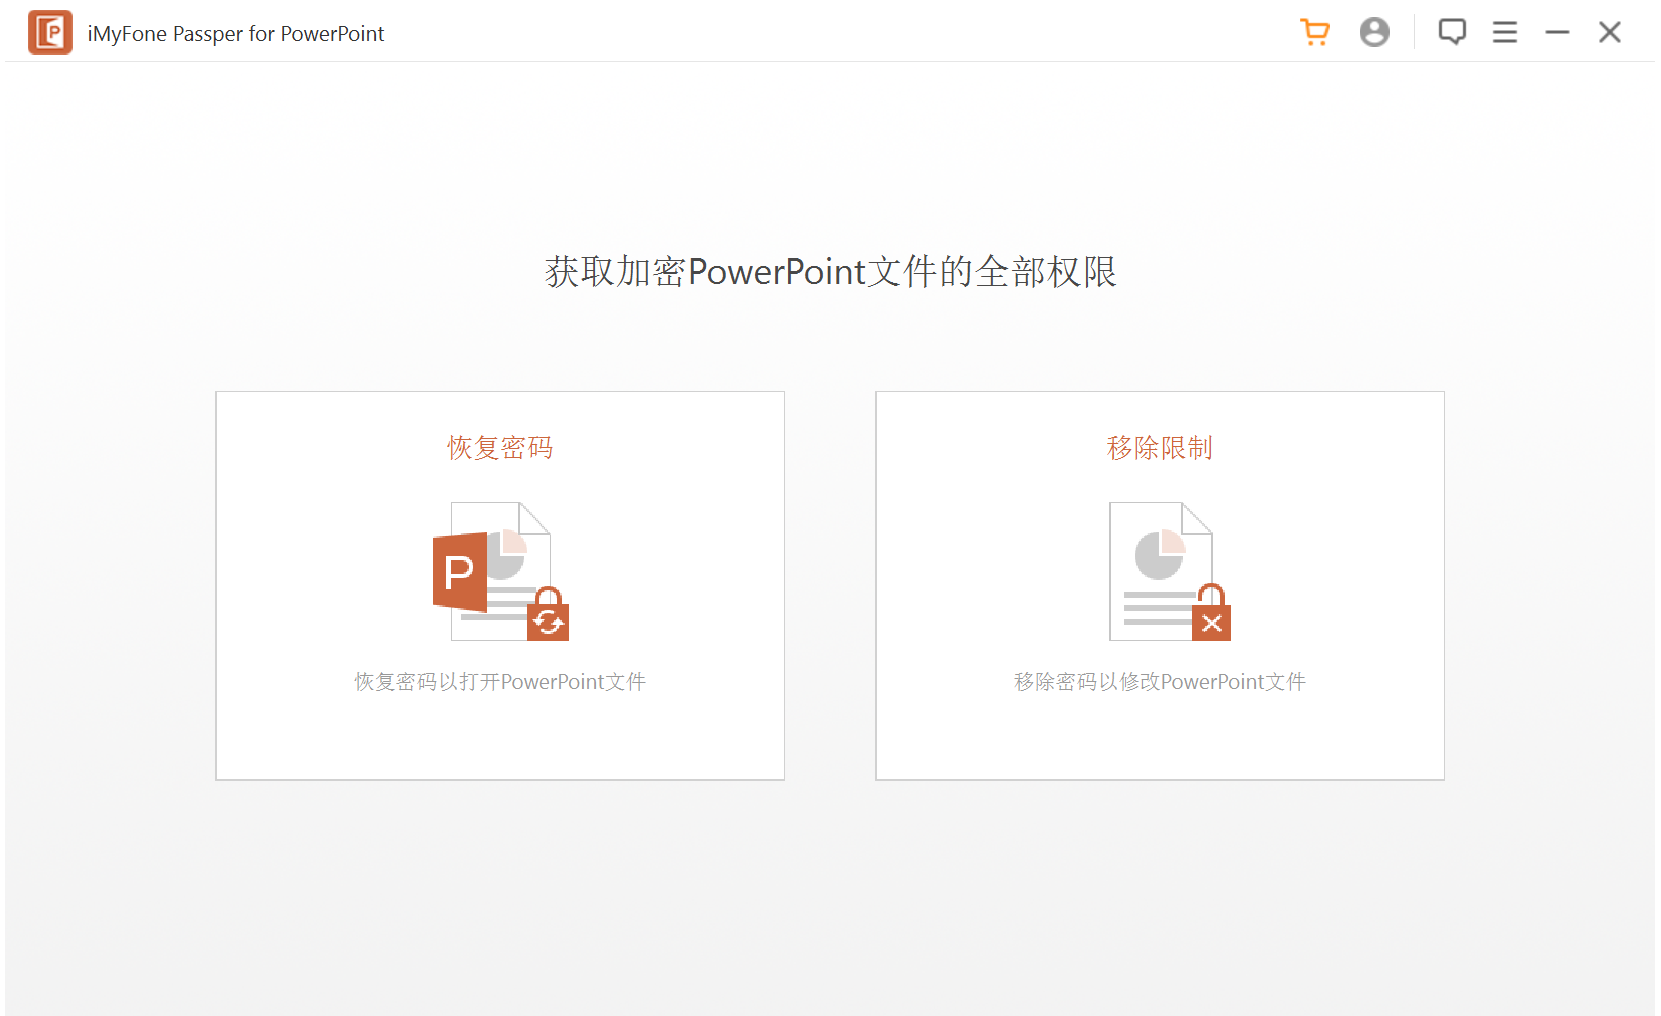 PPT解密软件 Passper for PowerPoint v3.7.1 破解版（免注册码）